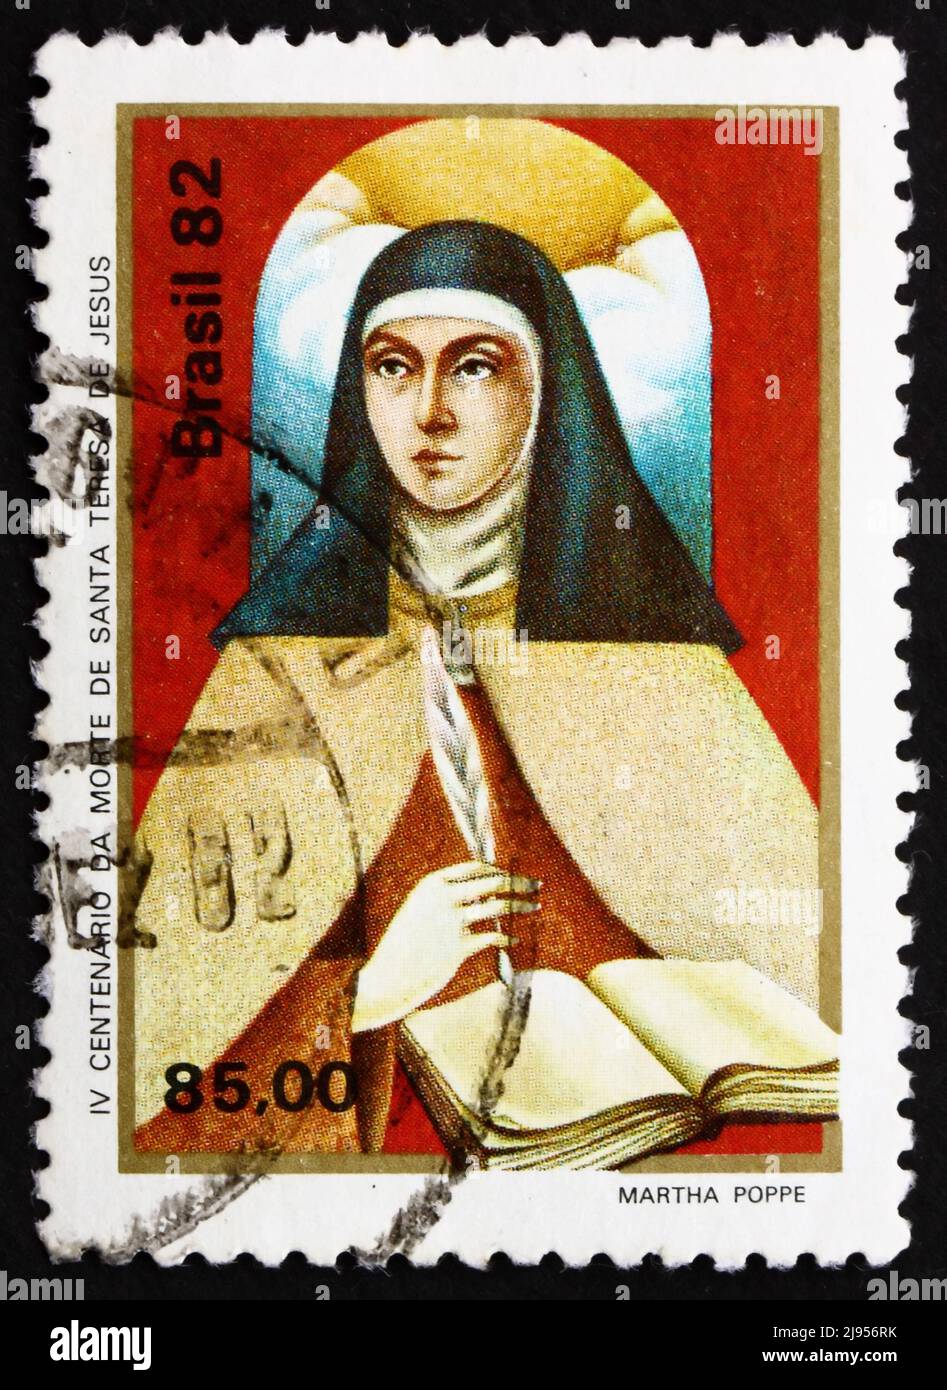 BRASILIEN - UM 1982: Eine in Brasilien gedruckte Briefmarke zeigt die heilige Theresa von Avila, Portrait, Reformator des Karmelitordens, um 1982 Stockfoto